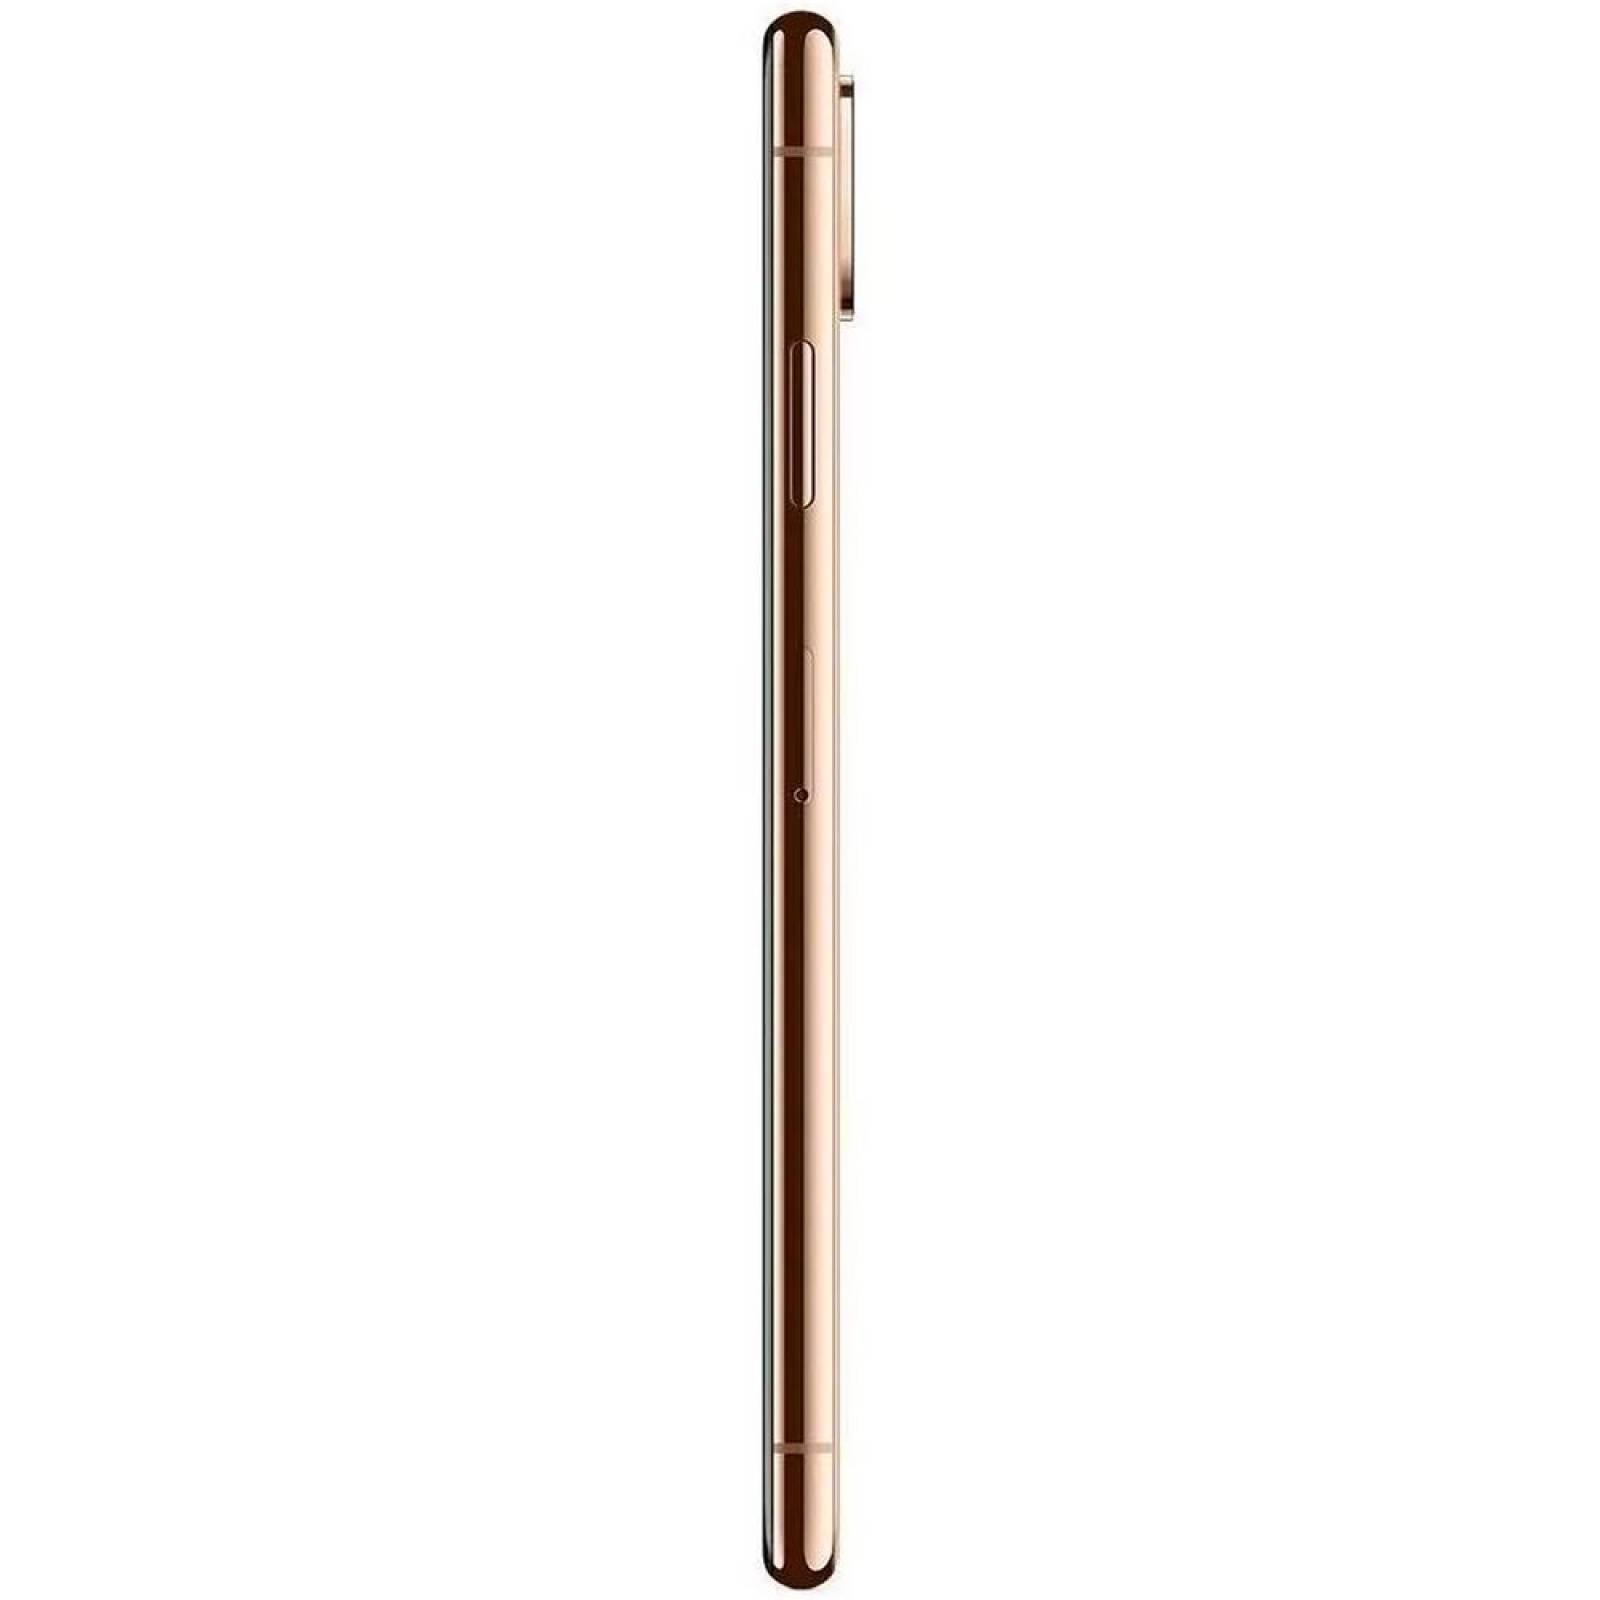 Celular APPLE iPhone XS MAX 4GB 64GB Hexa Core iOS 12 Gold MT5C2LL/A Open Box 